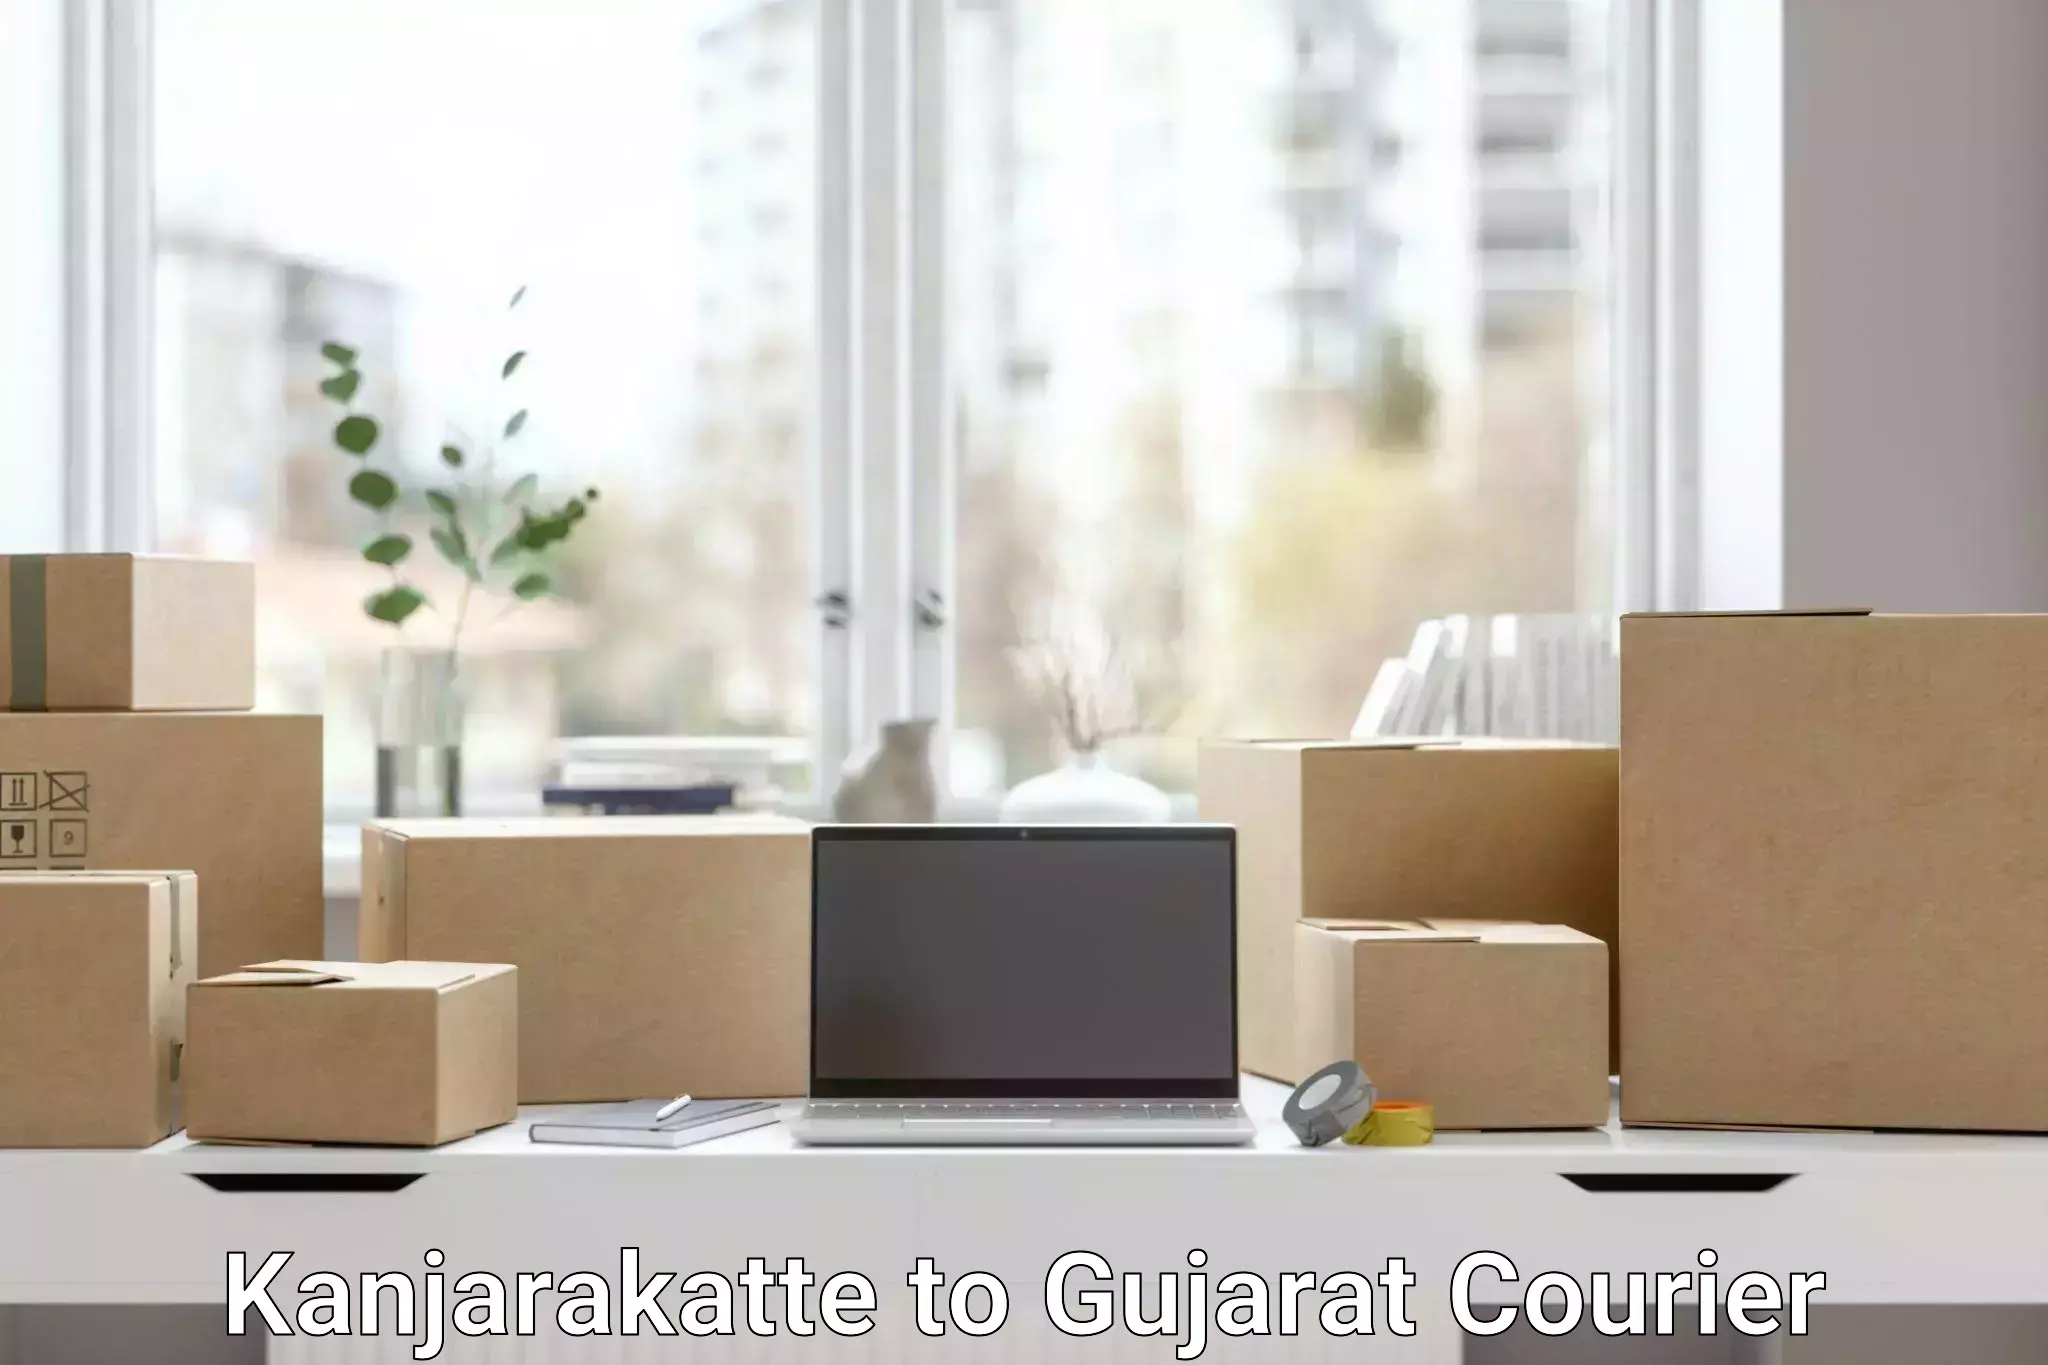 Enhanced tracking features Kanjarakatte to Gujarat